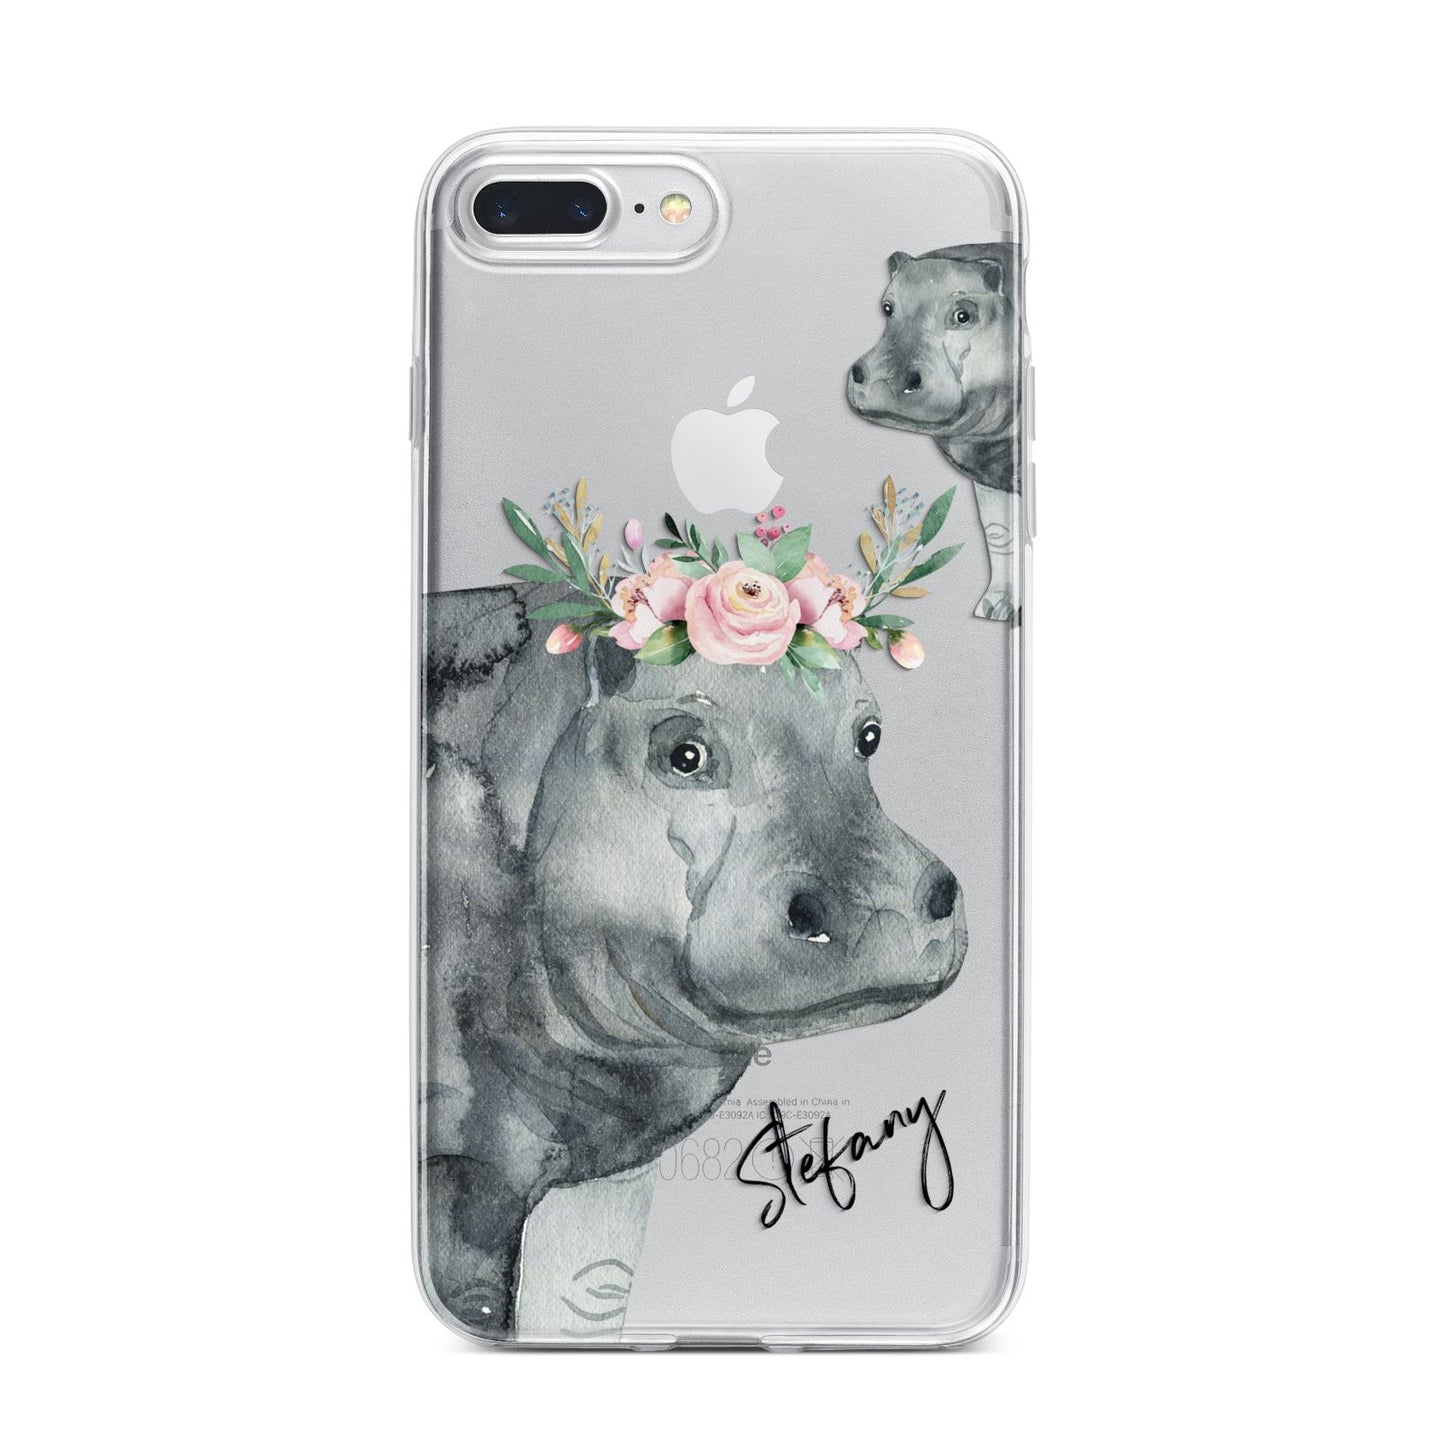 Personalised Hippopotamus iPhone 7 Plus Bumper Case on Silver iPhone